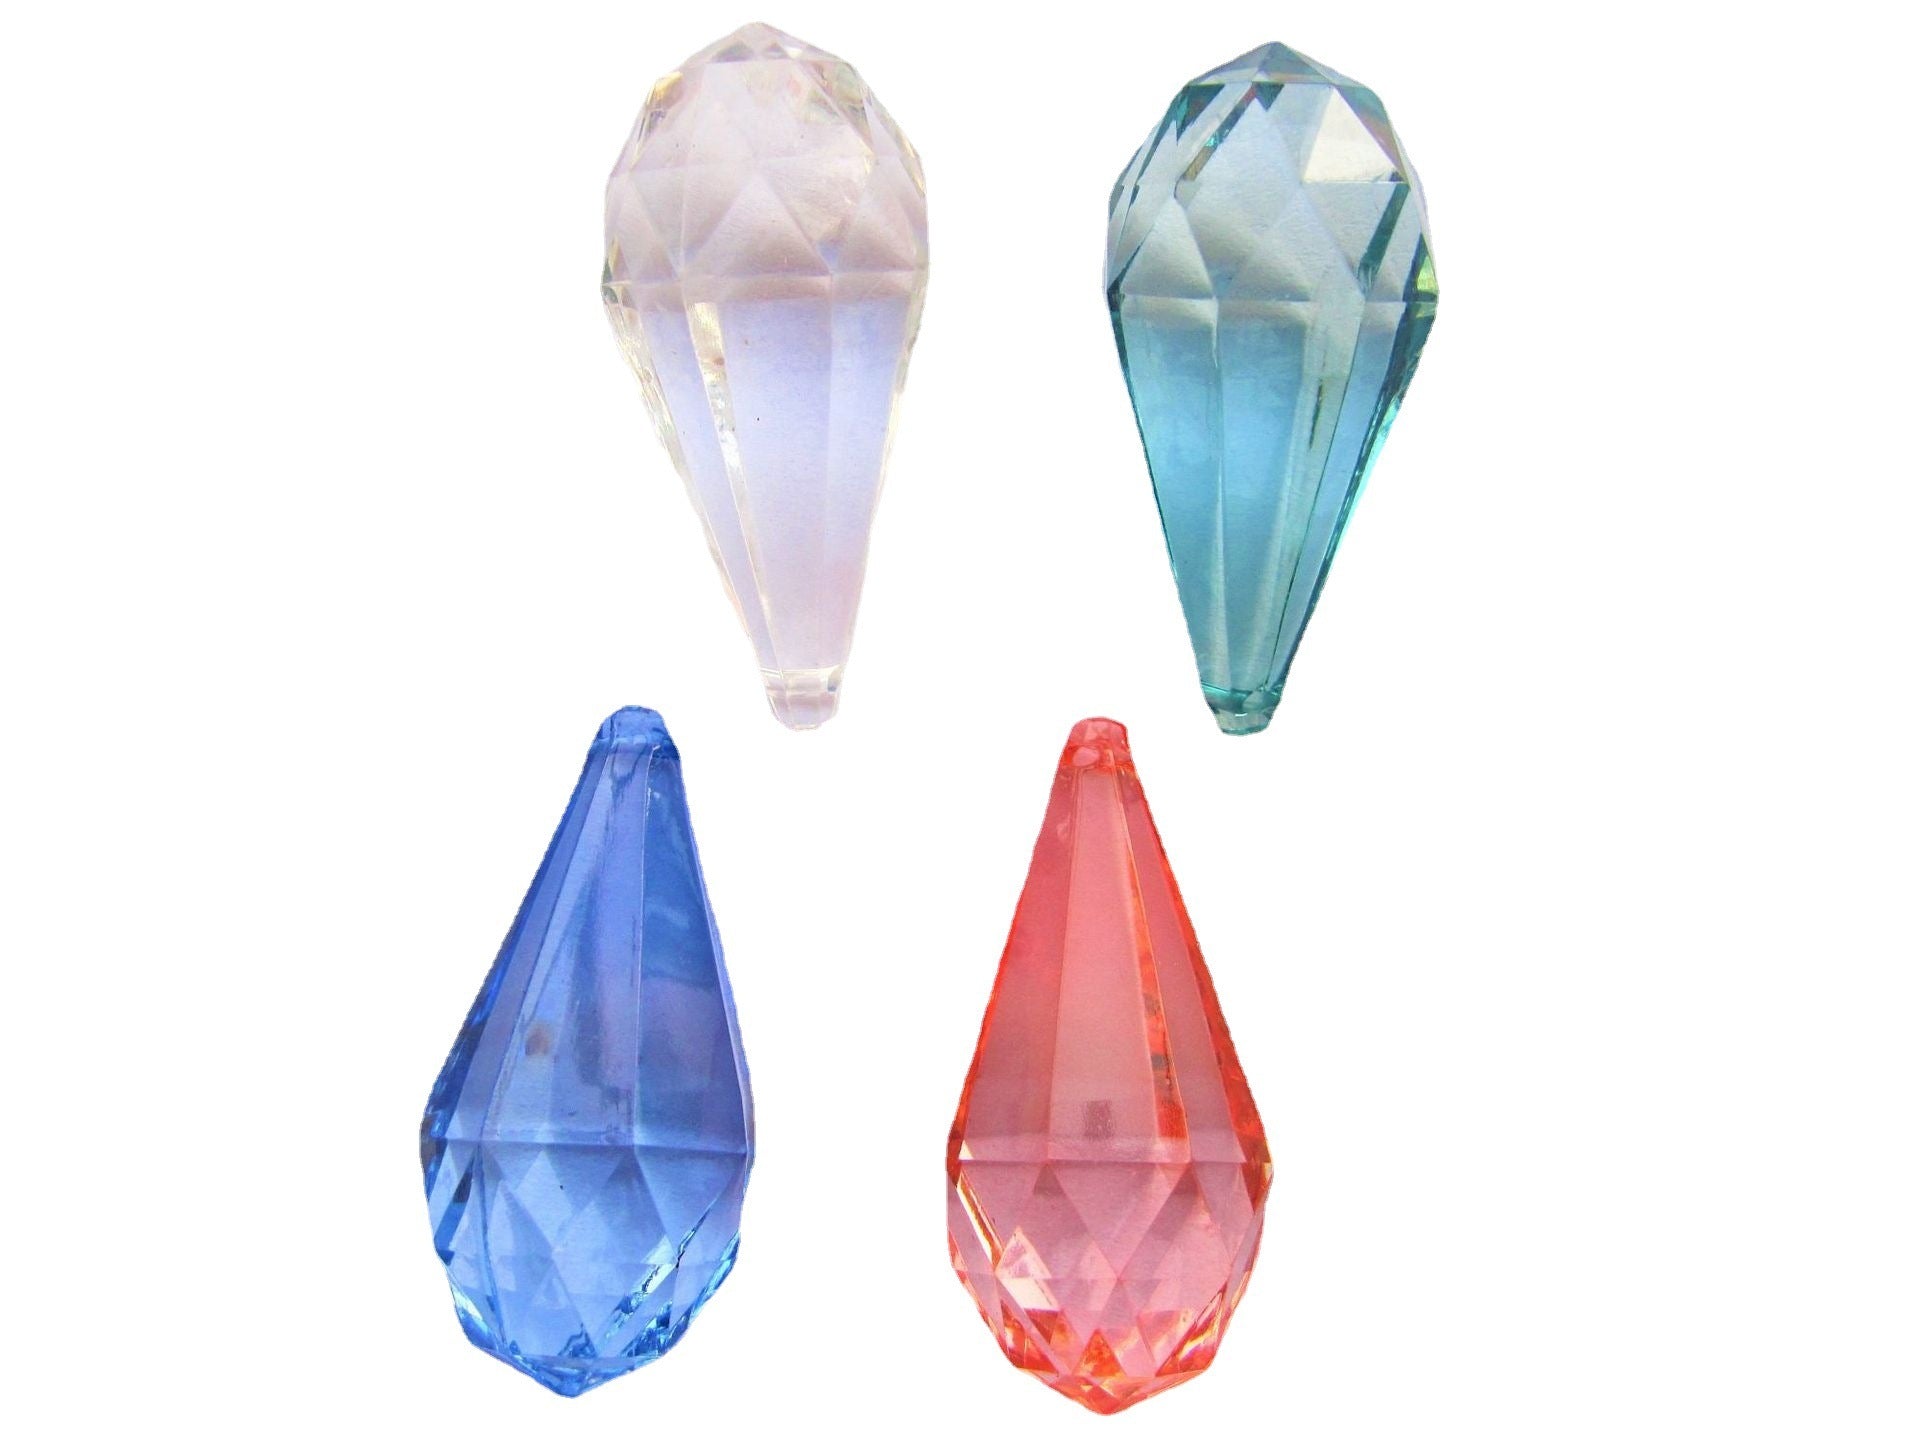 Water Drop High Transparent Acrylic Crystal Beads